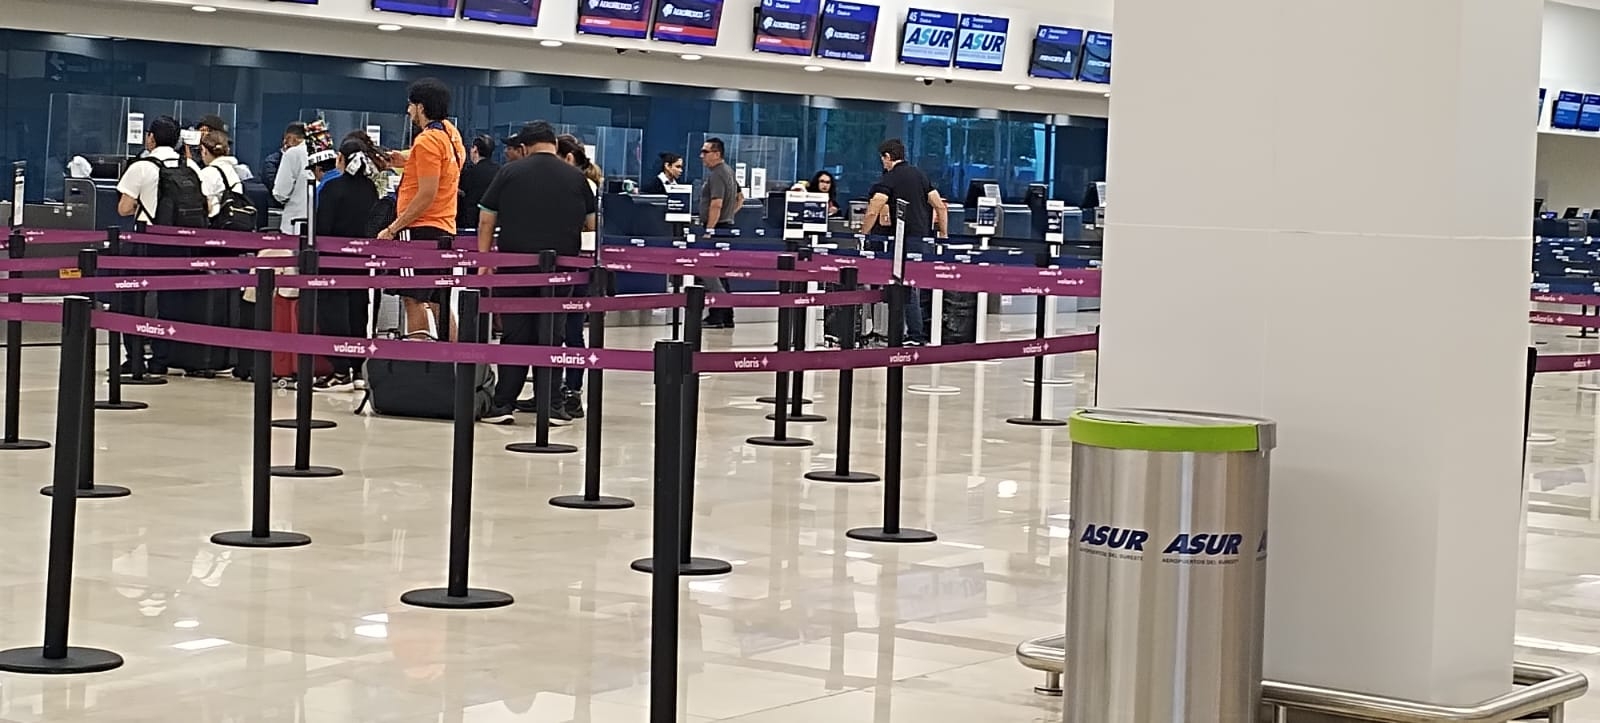 Son siete vuelos retrasados en el aeropuerto de Mérida